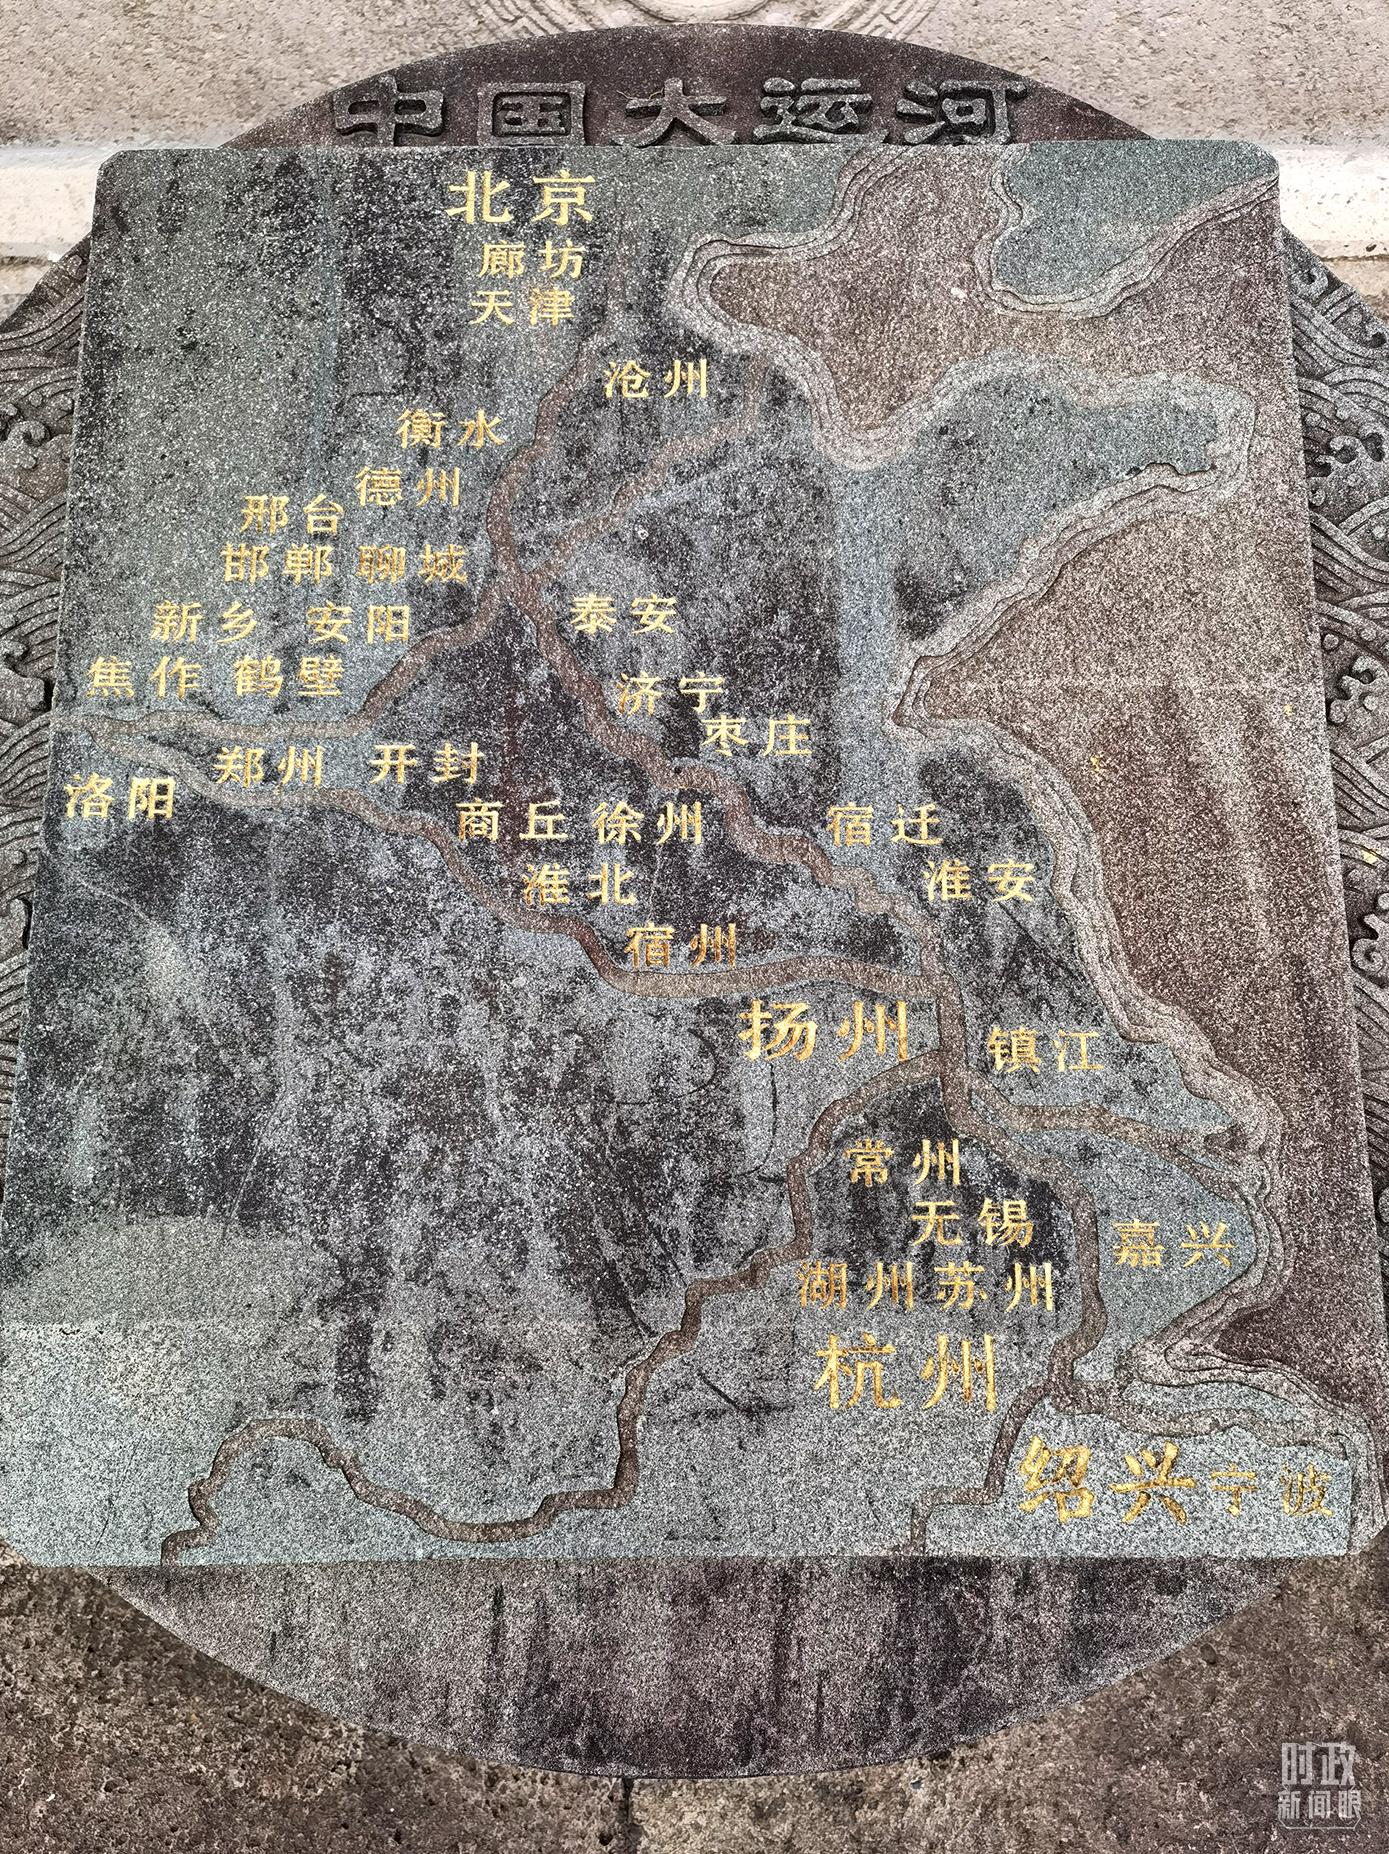 △文化园内的中国大运河示意图。（总台央视记者石丞拍摄）